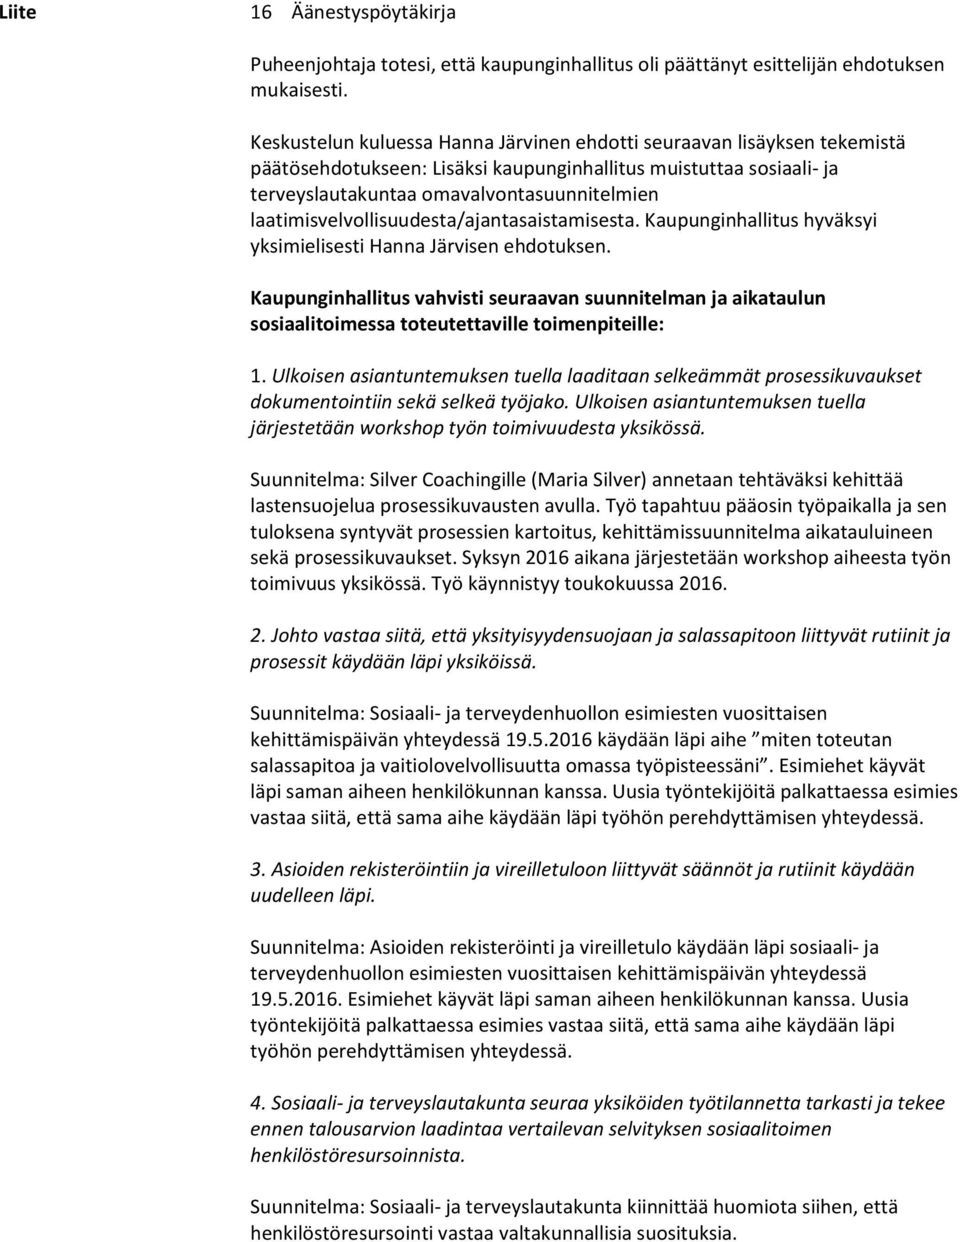 laatimisvelvollisuudesta/ajantasaistamisesta. Kaupunginhallitus hyväksyi yksimielisesti Hanna Järvisen ehdotuksen.